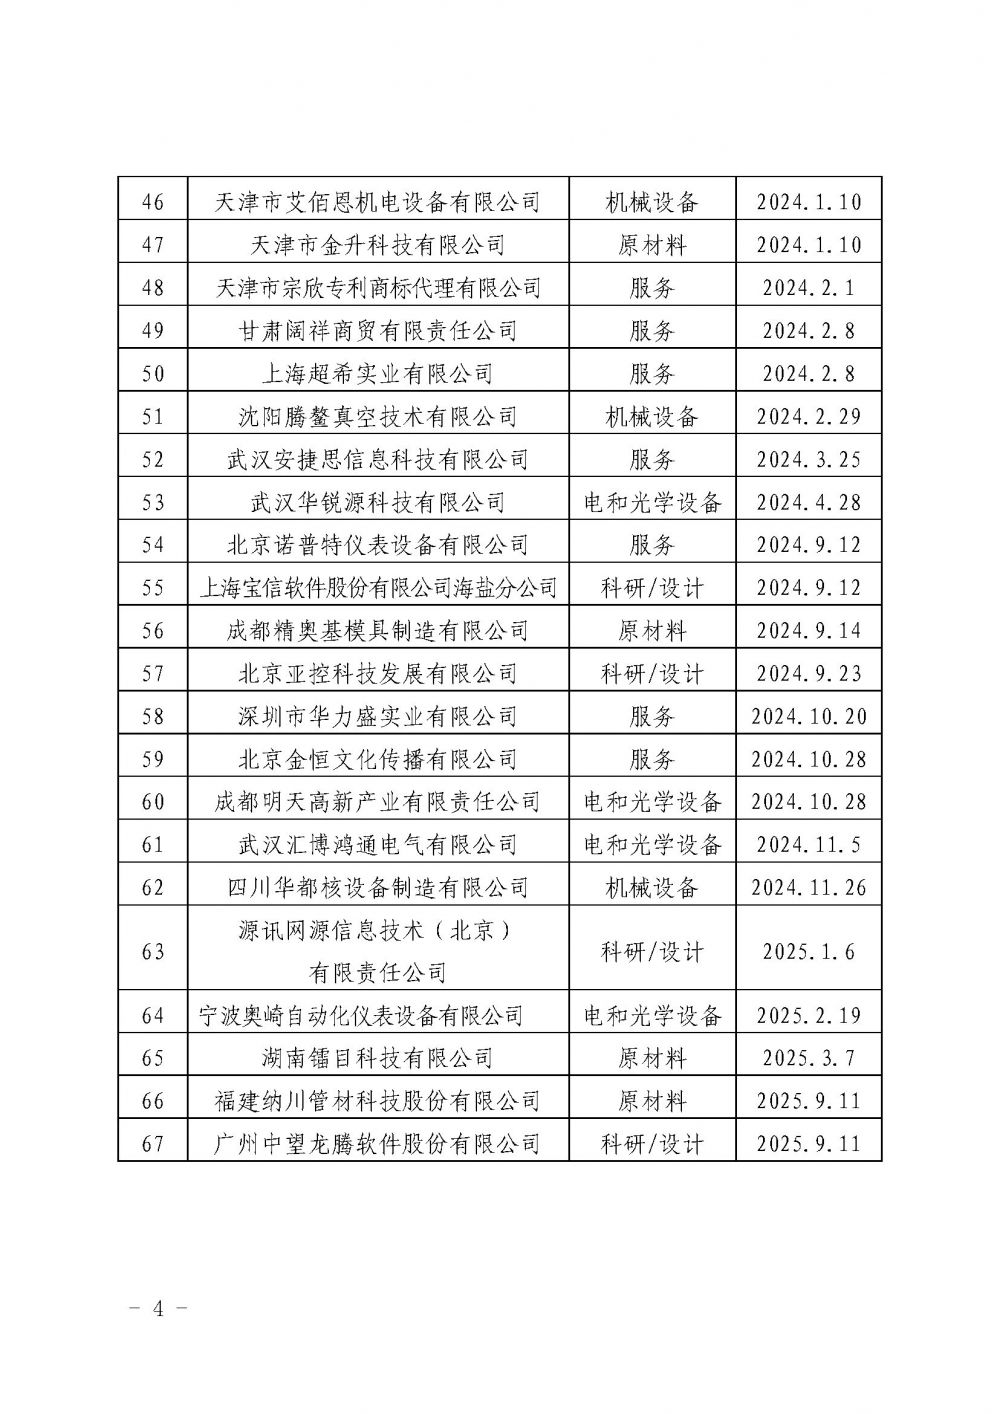 关于发布中国核能行业协会核能行业第十二批合格供应商名录的公告_页面_4.jpg